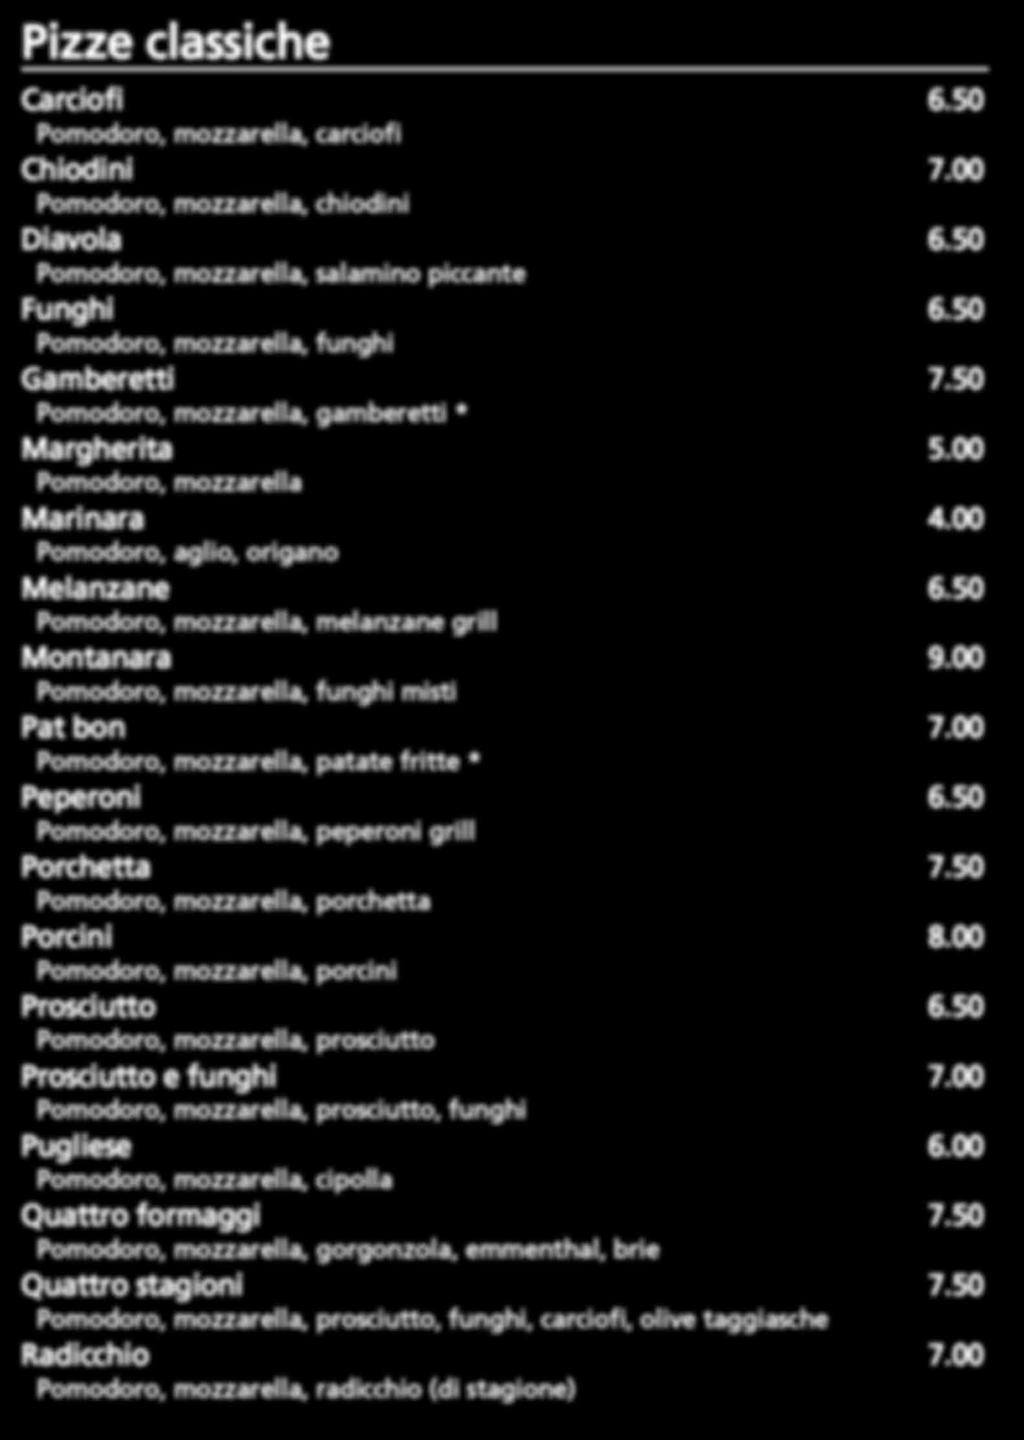 Pizze classiche Carciofi 6.50 Pomodoro, mozzarella, carciofi Chiodini 7.00 Pomodoro, mozzarella, chiodini Diavola 6.50 Pomodoro, mozzarella, salamino piccante Funghi 6.